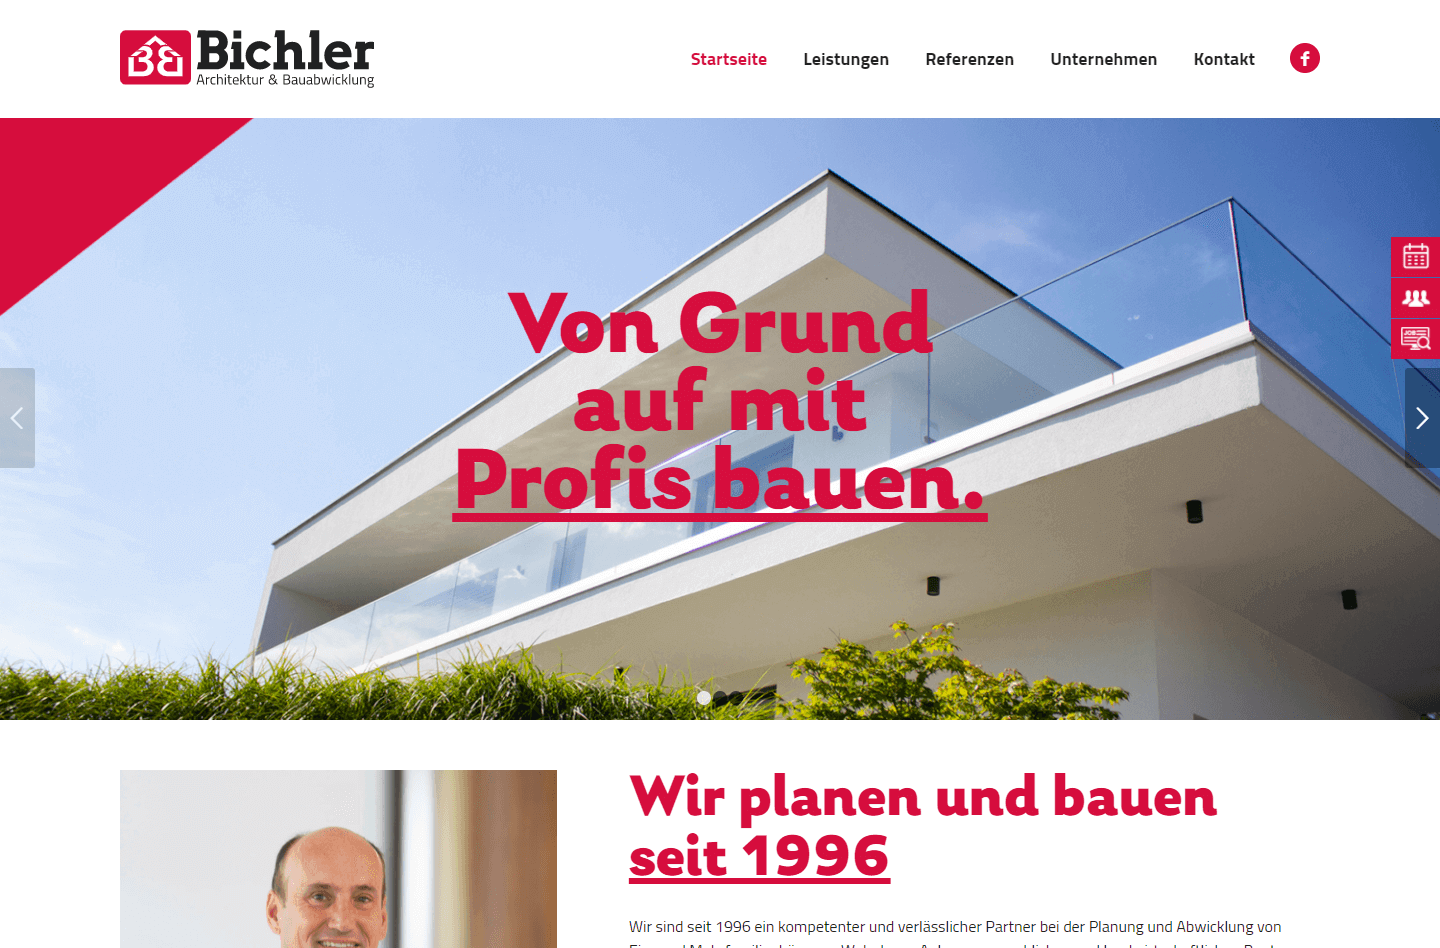 Bichler Architektur & Bauabwicklung